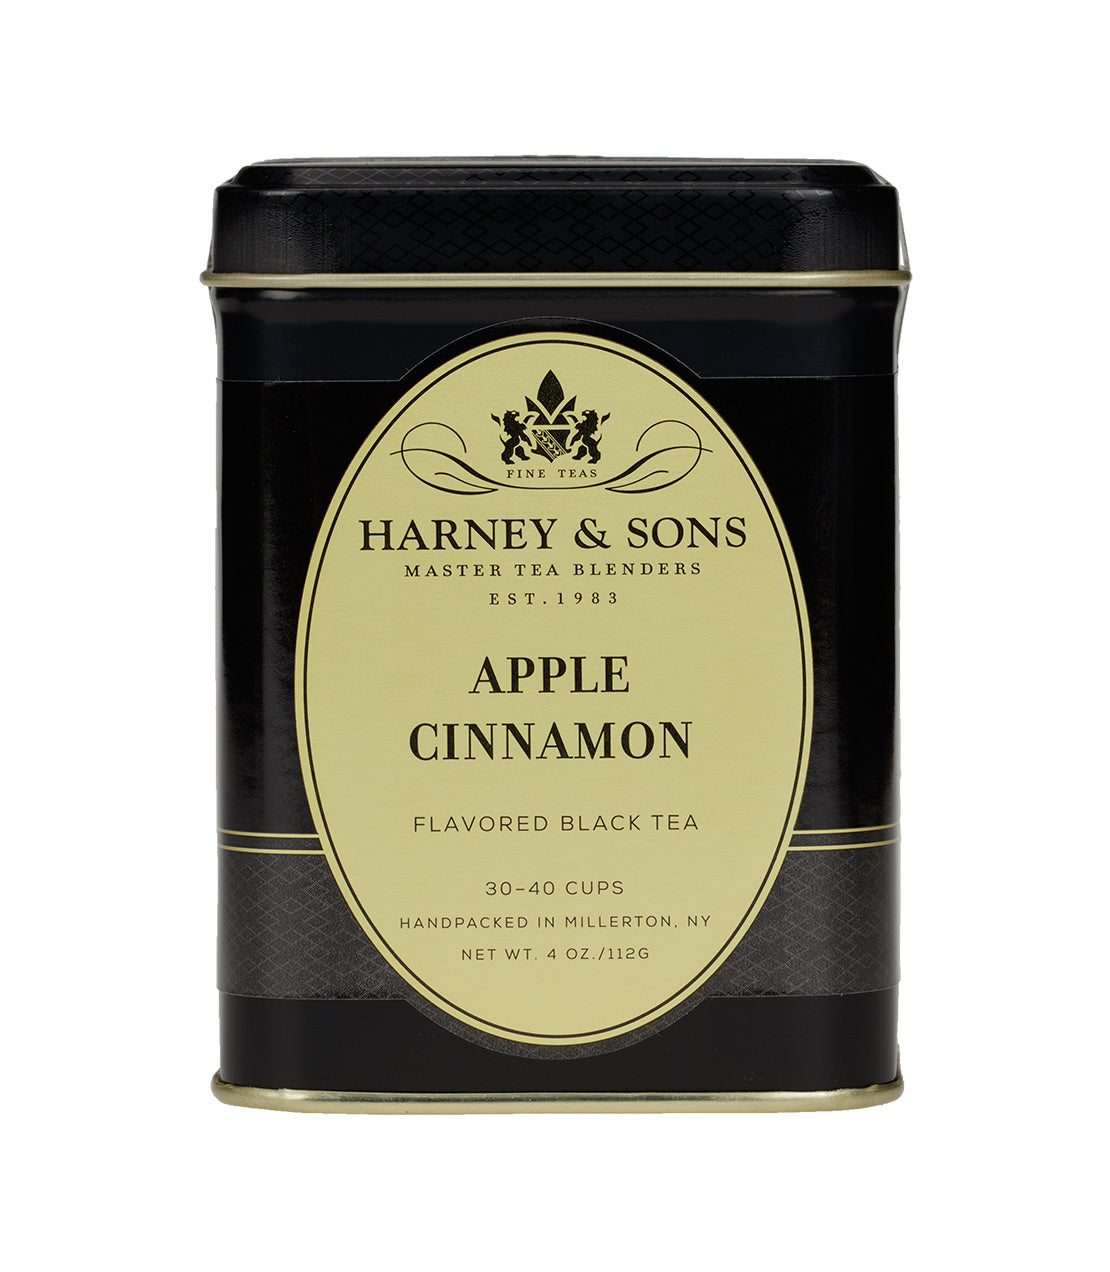 Apple Cinnamon